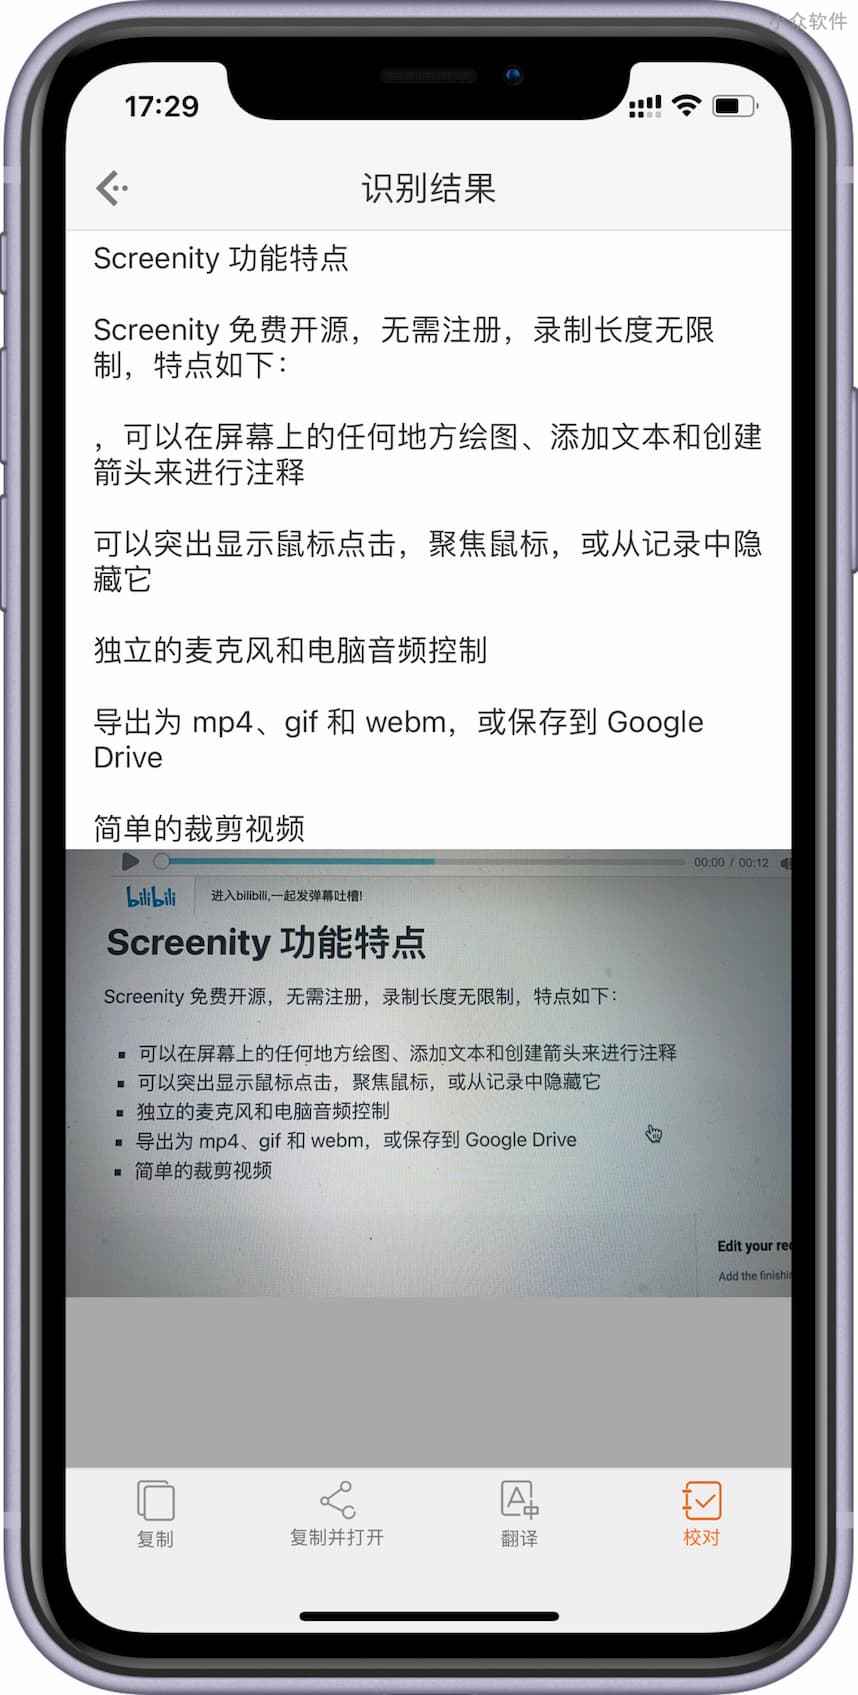 扫描汪 - 完全免费、可离线运行的 OCR 文字识别应用，白描开发者作品[iPhone/iPad] 1